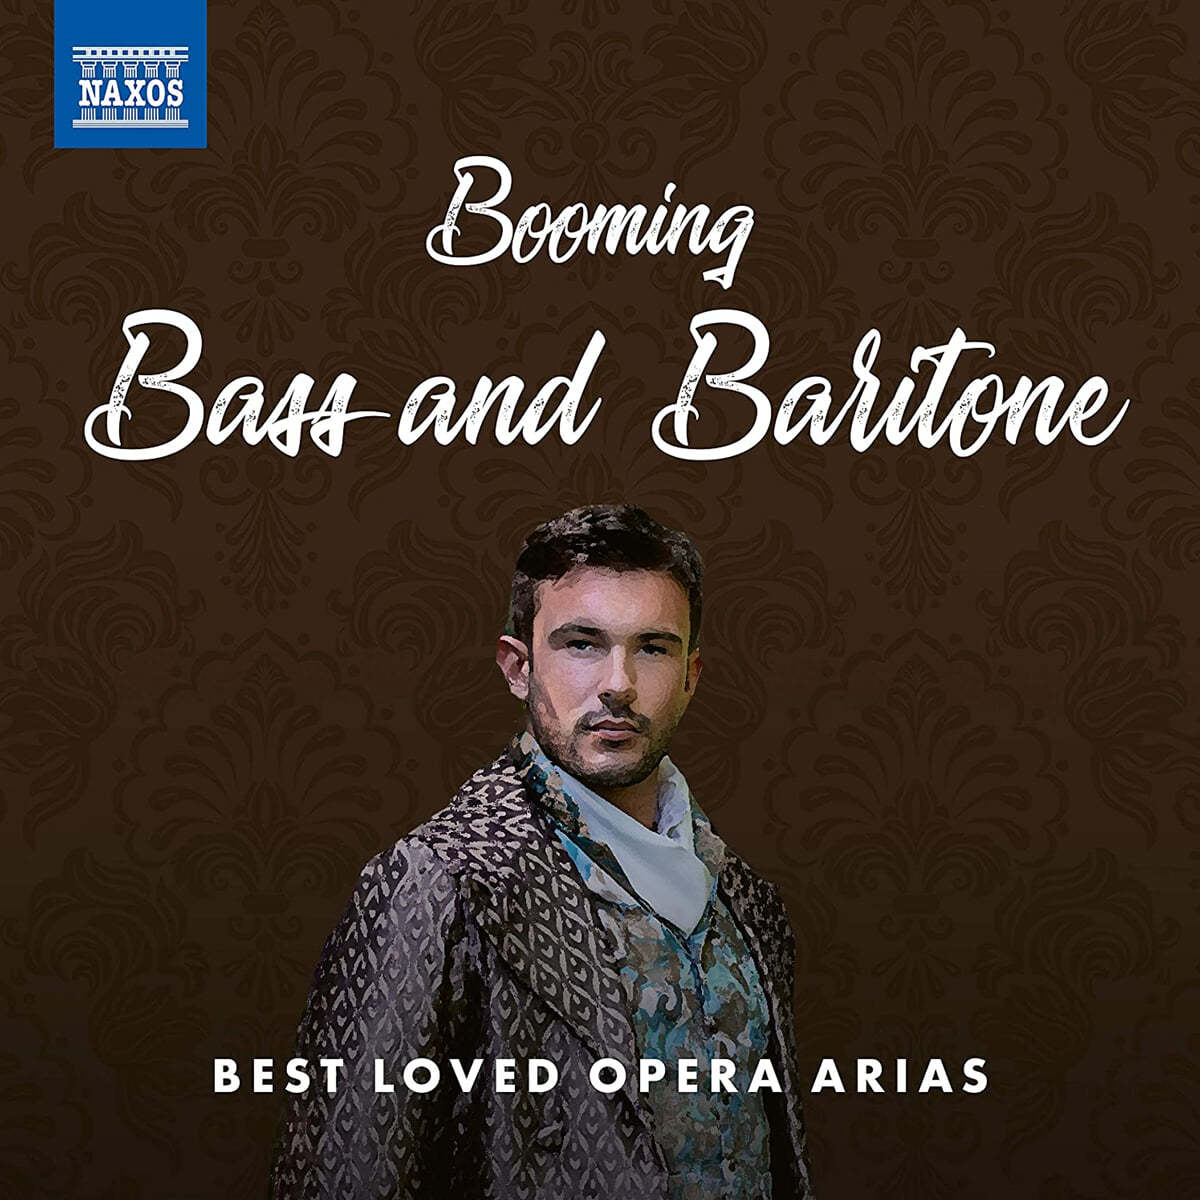 베이스와 바리톤을 위한 오페라 아리아 베스트 음반 (Booming Bass and Baritone - Best Loved Opera Arias) 